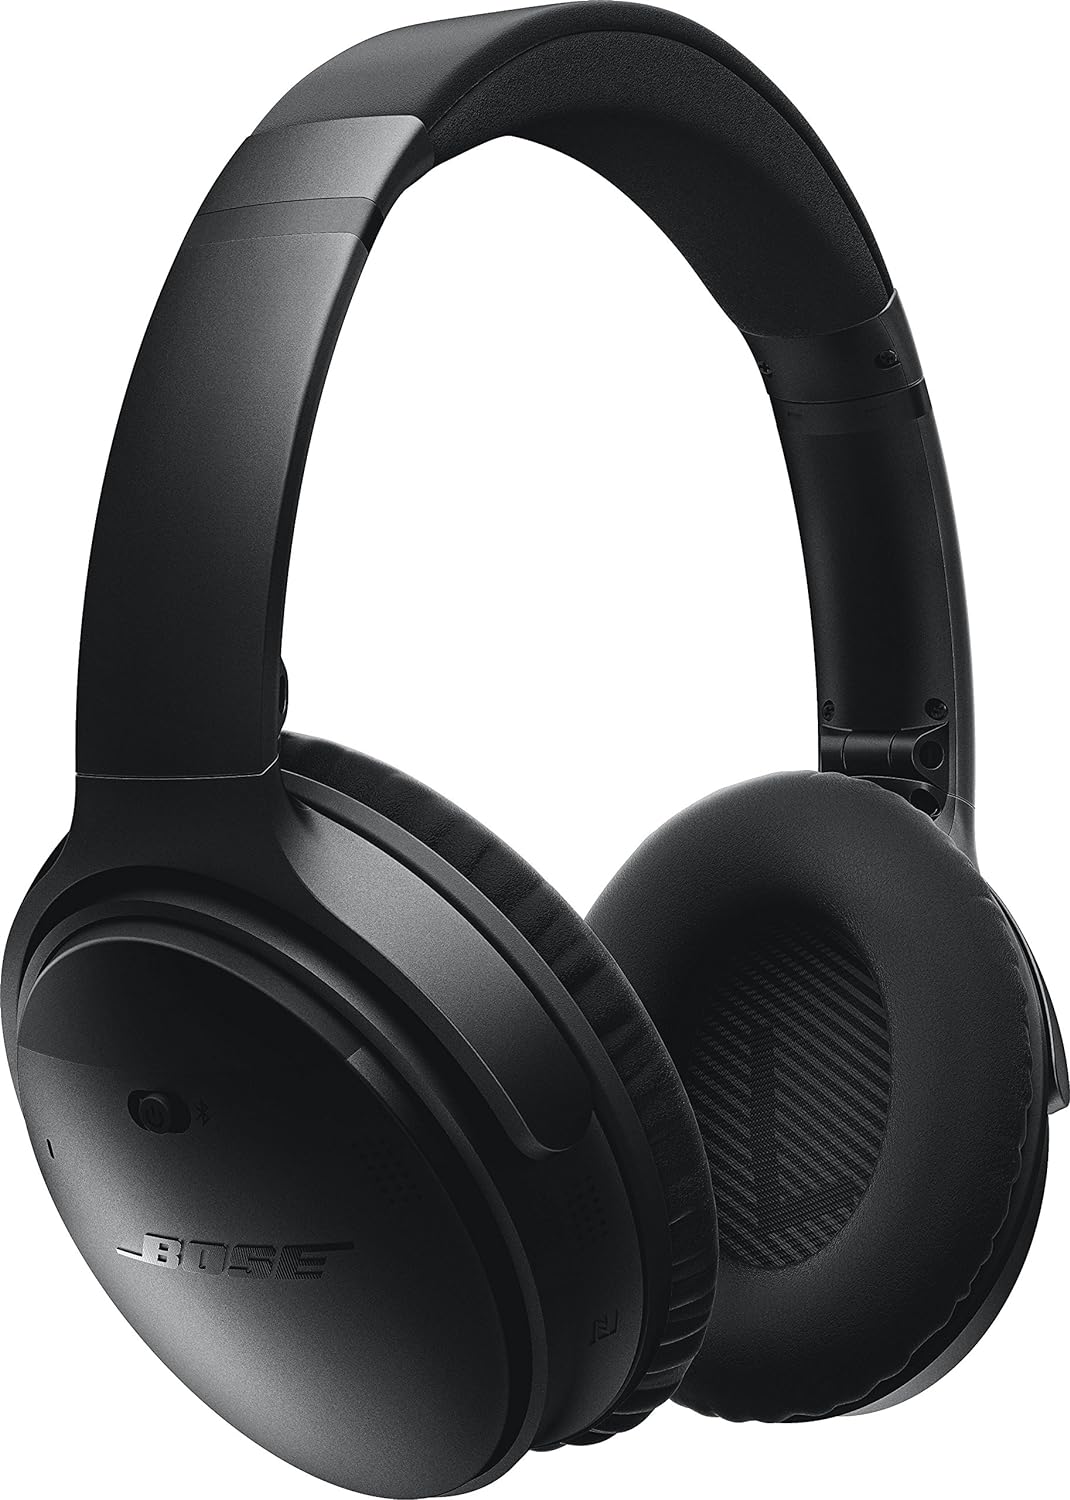 25位：Bose QuietComfort 35 wireless headphones ワイヤレスノイズキャンセリングヘッドホン